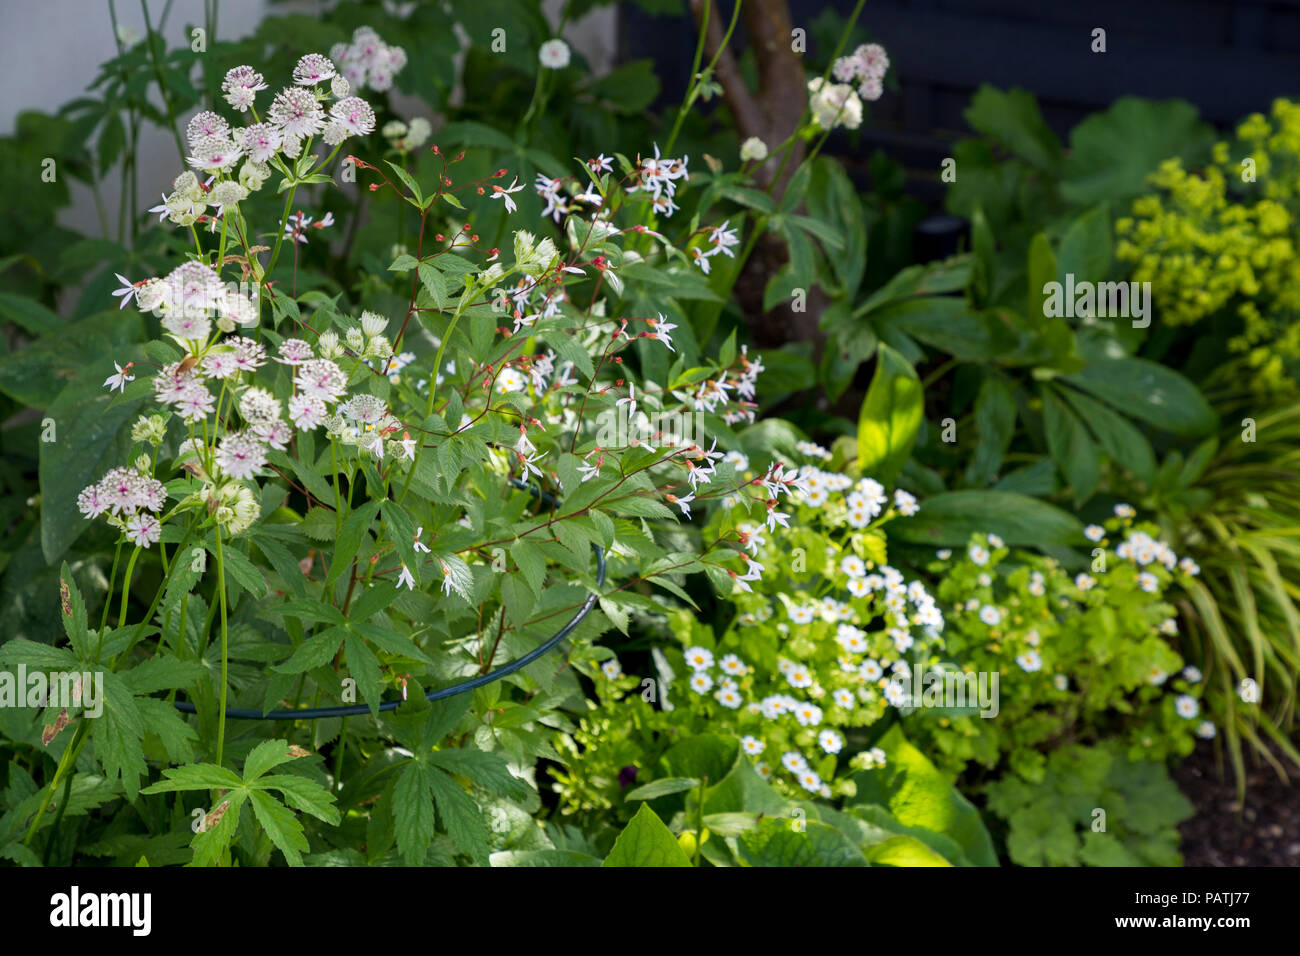 Planting combination of Astrantia major, Tanacetum parthenium and Gillenia trifoliata Stock Photo